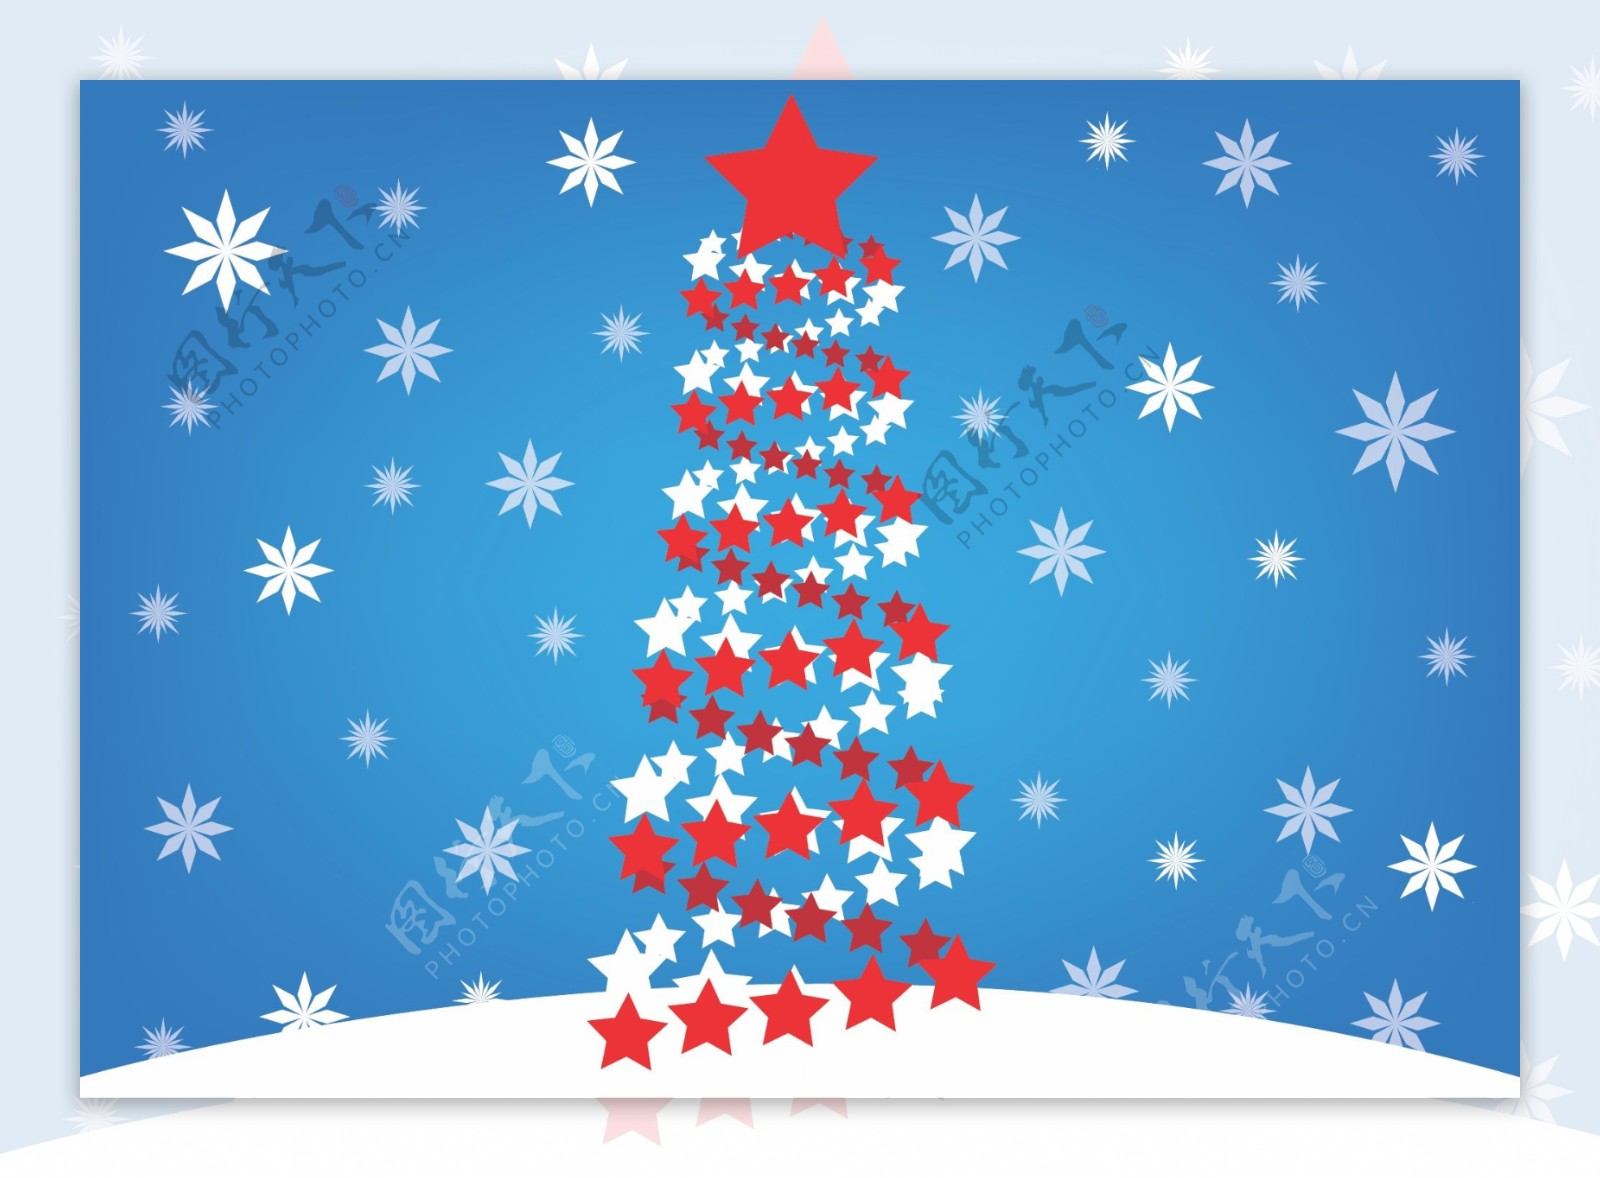 星星做成的圣诞树背景图案